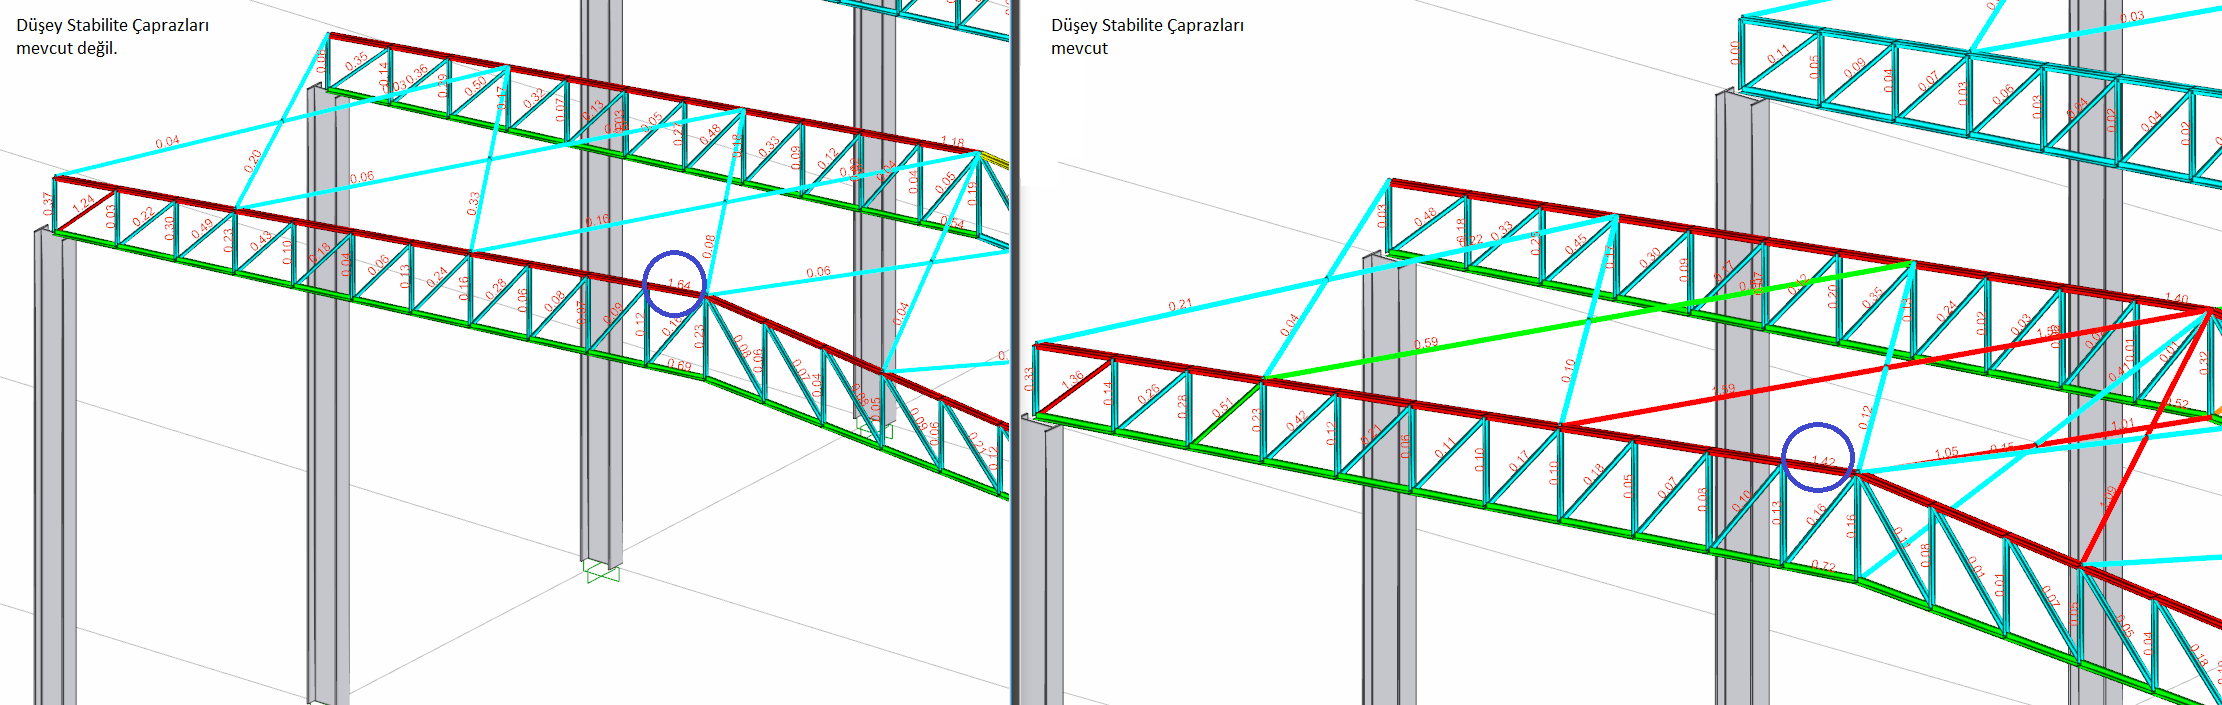 Düşey Stabilite Çaprazları Çelik Yapılar için Stabilitenin Sağlanması Kafes kiriş sistemi alt ve üst